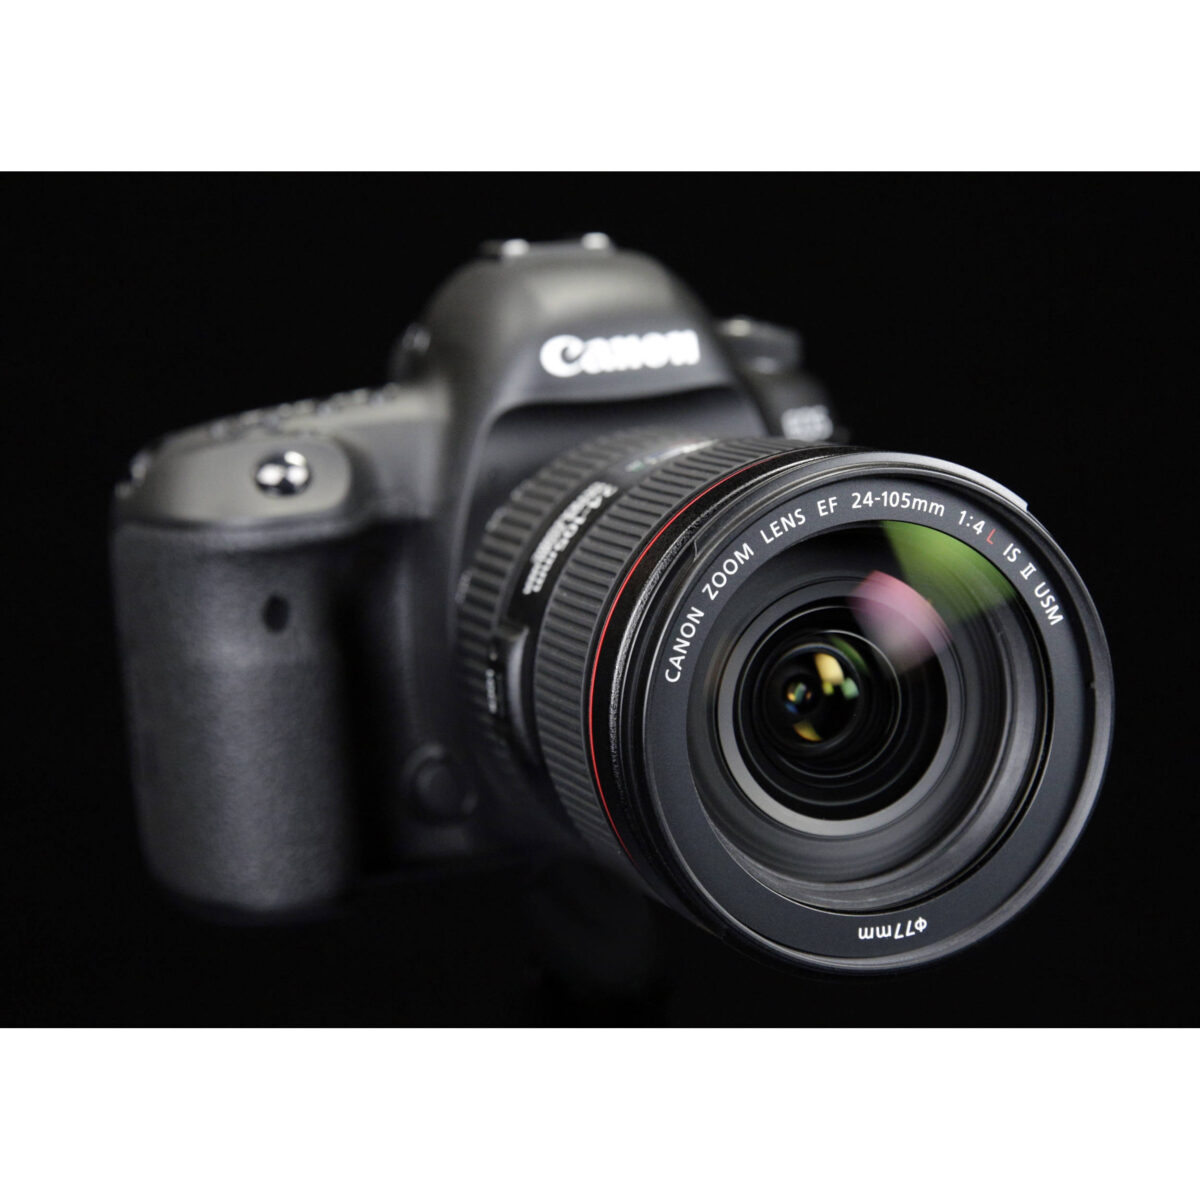 بهترین قیمت دوربین دیجیتال کانن eos 5d mark IV - فروشگاه یزد کمرا